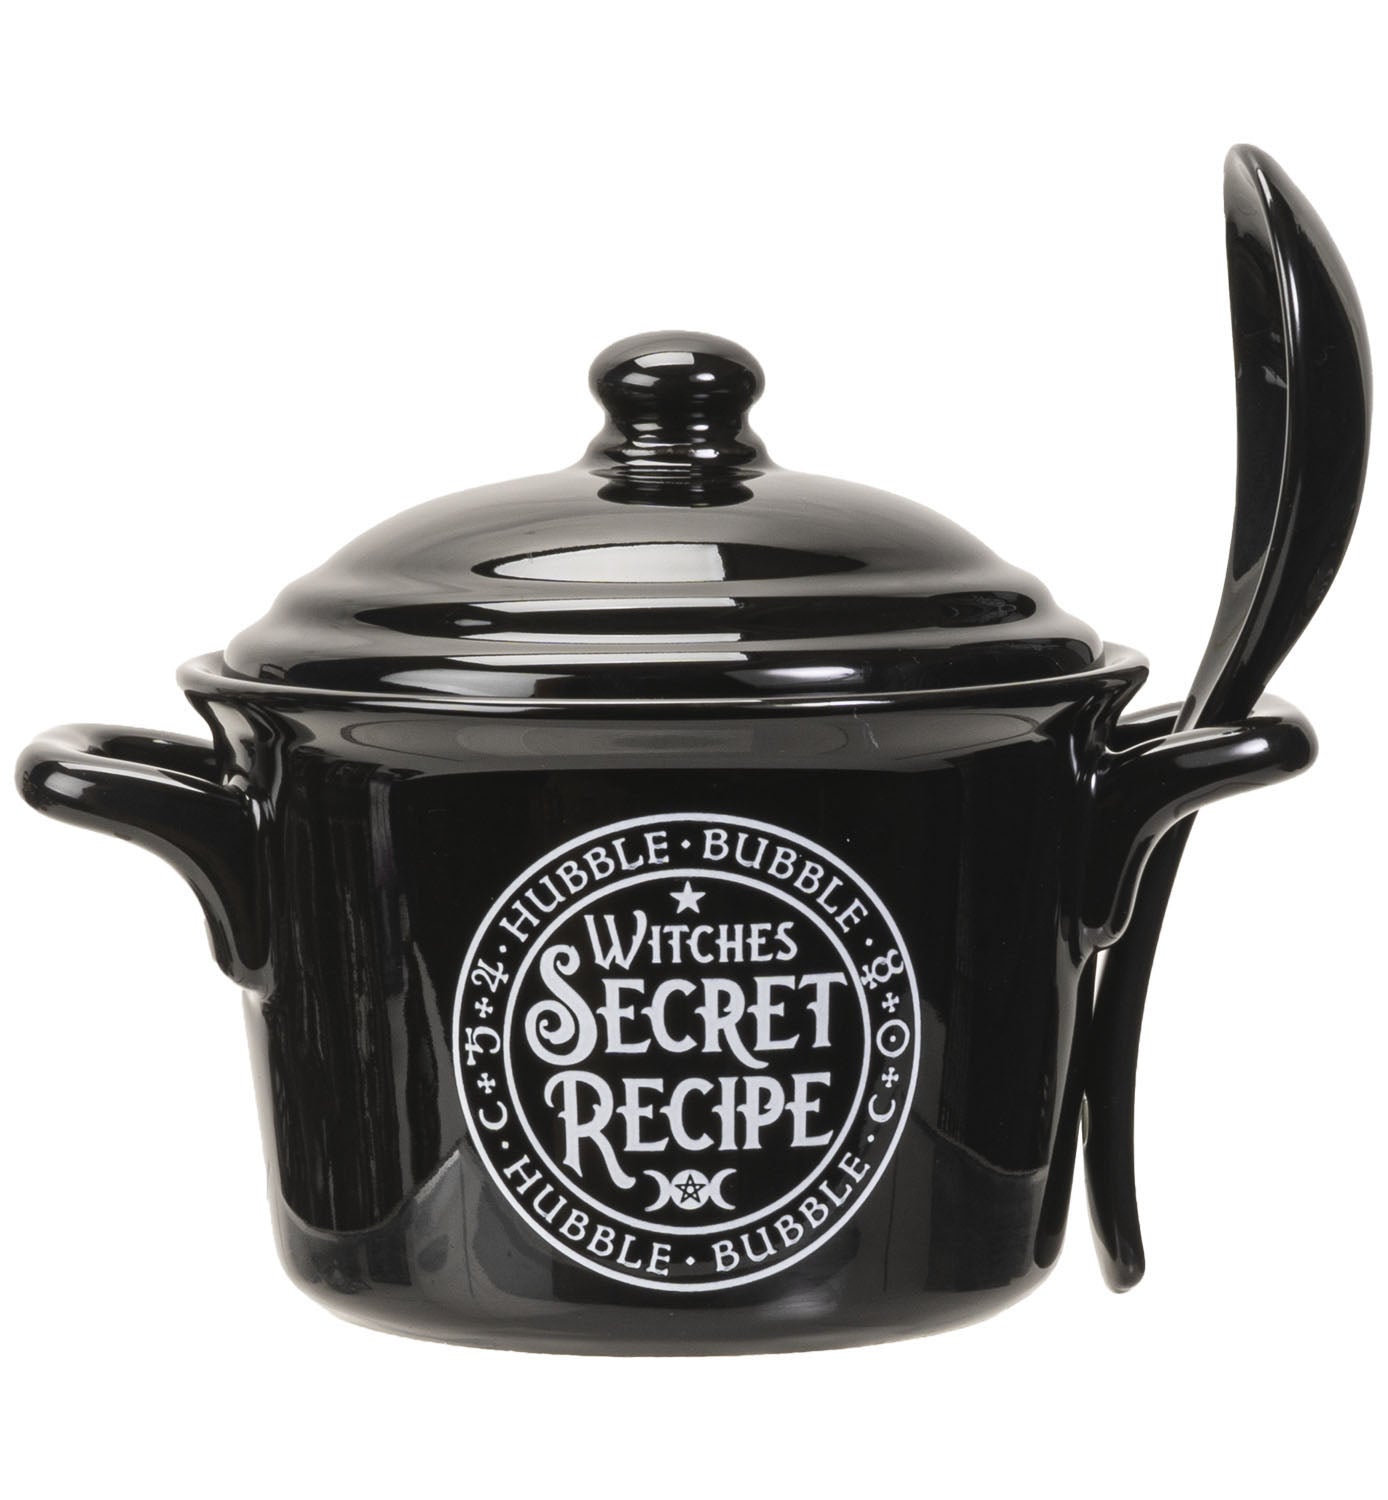 Witches Secret Recipe Soup Bowl